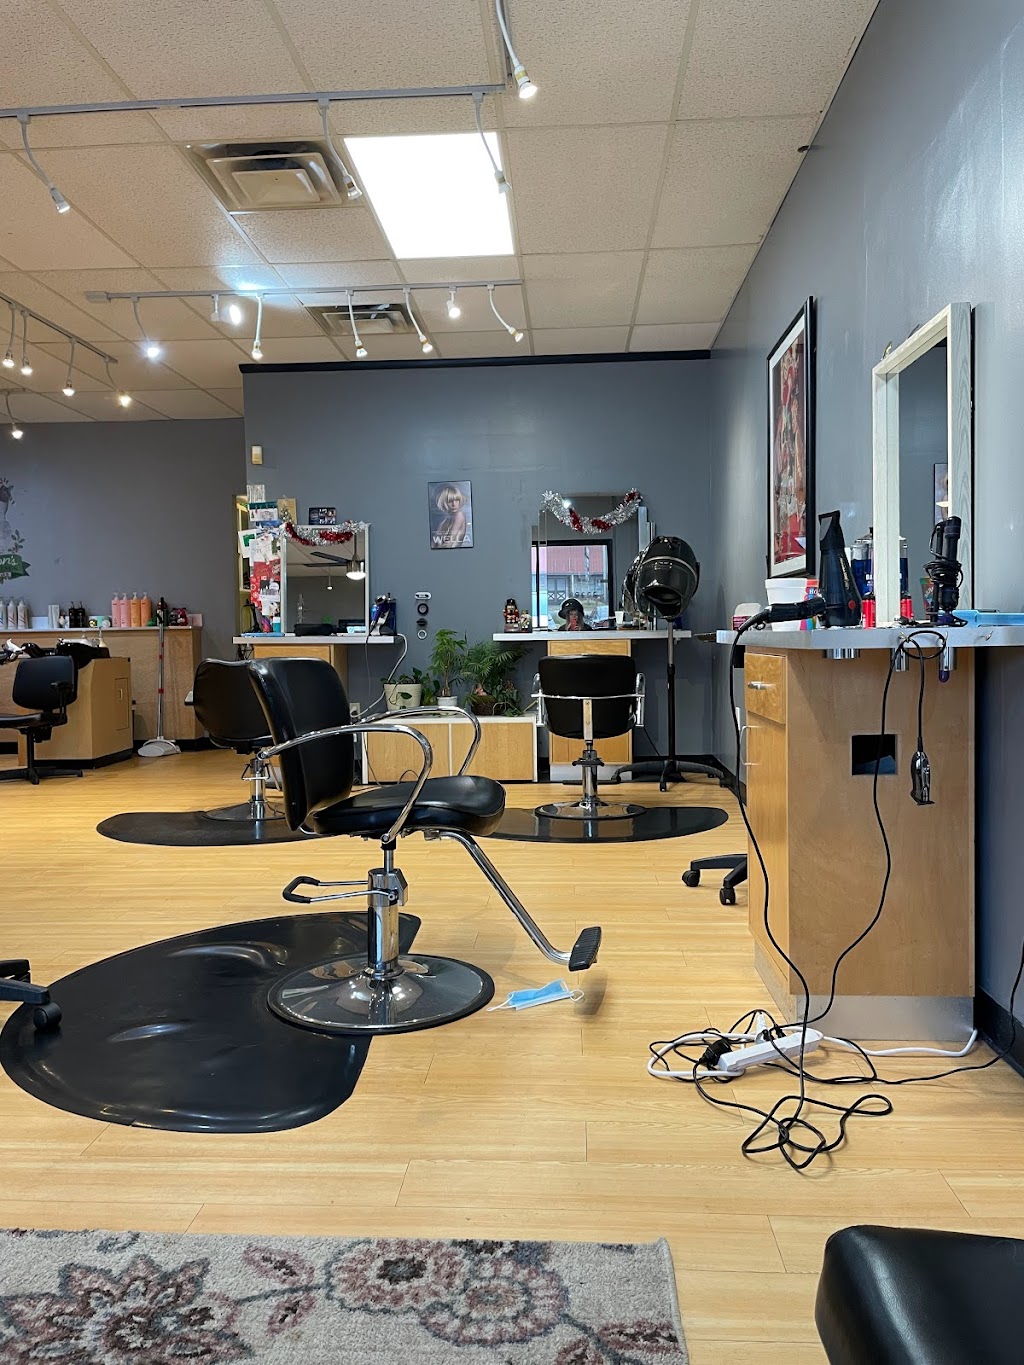 Head First Hair Designs Salon & Spa | 2657 PA-940 #103, Pocono Summit, PA 18346 | Phone: (570) 839-1261